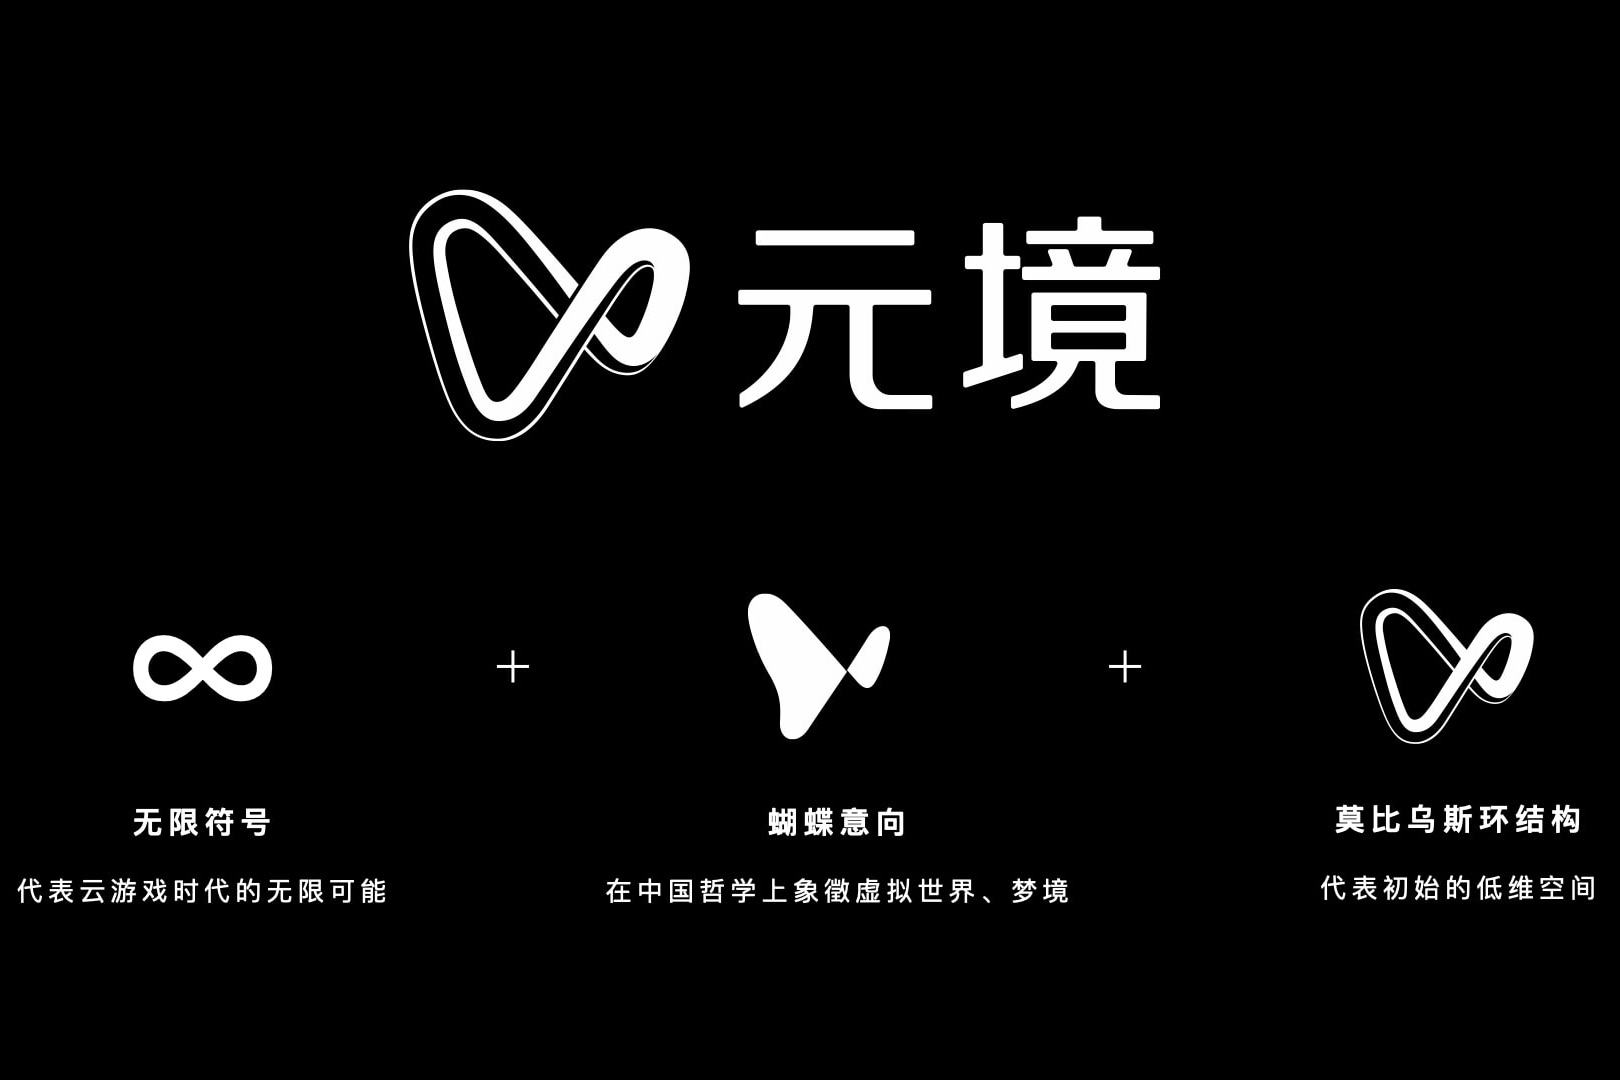 阿里巴巴云游戏事业部携新品牌“元境”亮相BIGC 2021